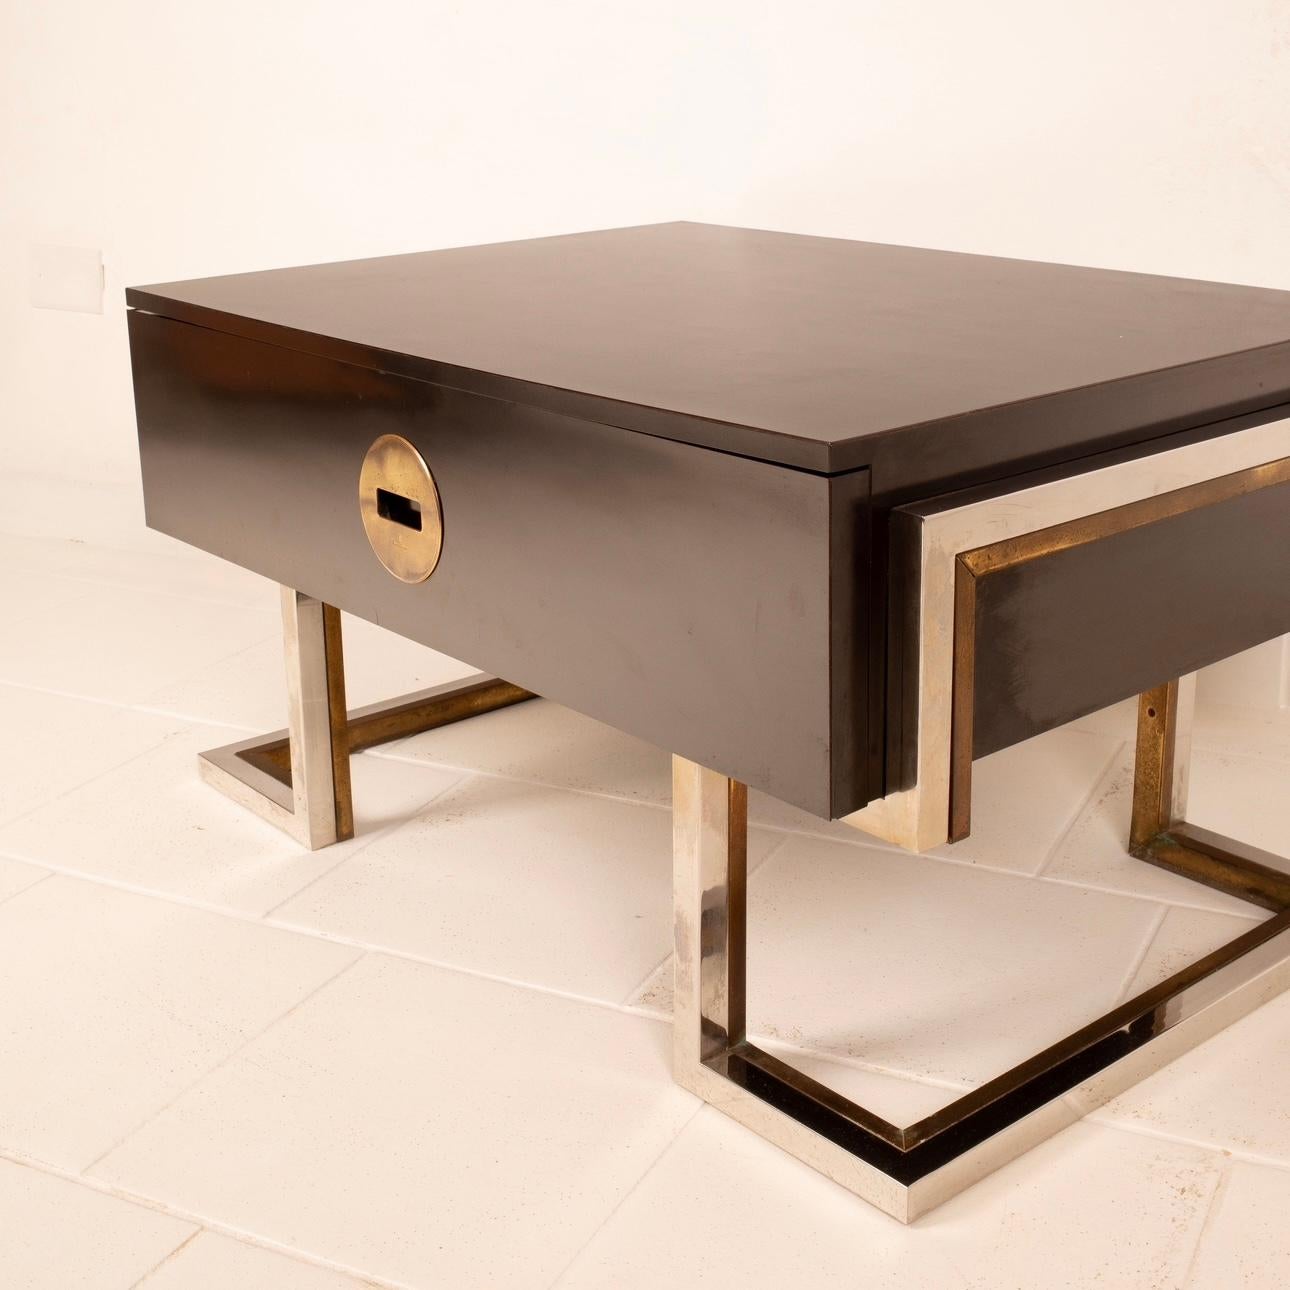 Superbe table basse ou table de chevet conçue et produite par Romeo Rega dans les années 1970.
La table basse est en bois stratifié noir avec des pieds en laiton et en acier chromé en excellent état.
Il y a un grand tiroir avec une poignée en laiton